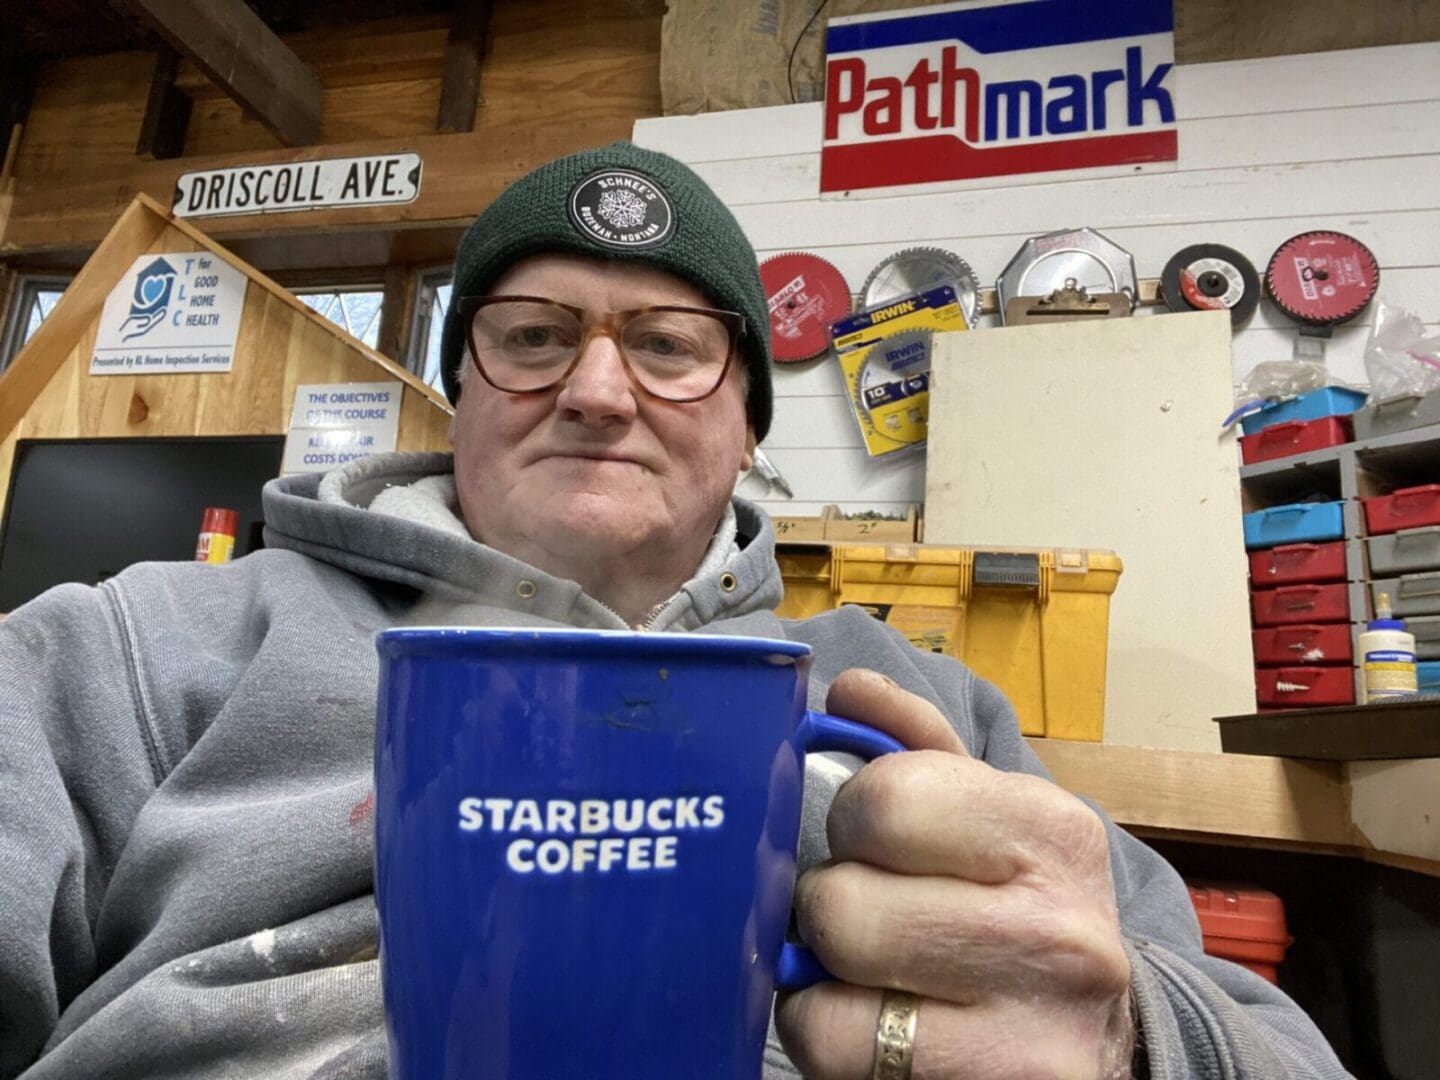 A man in a beanie holding a starbucks coffee mug.